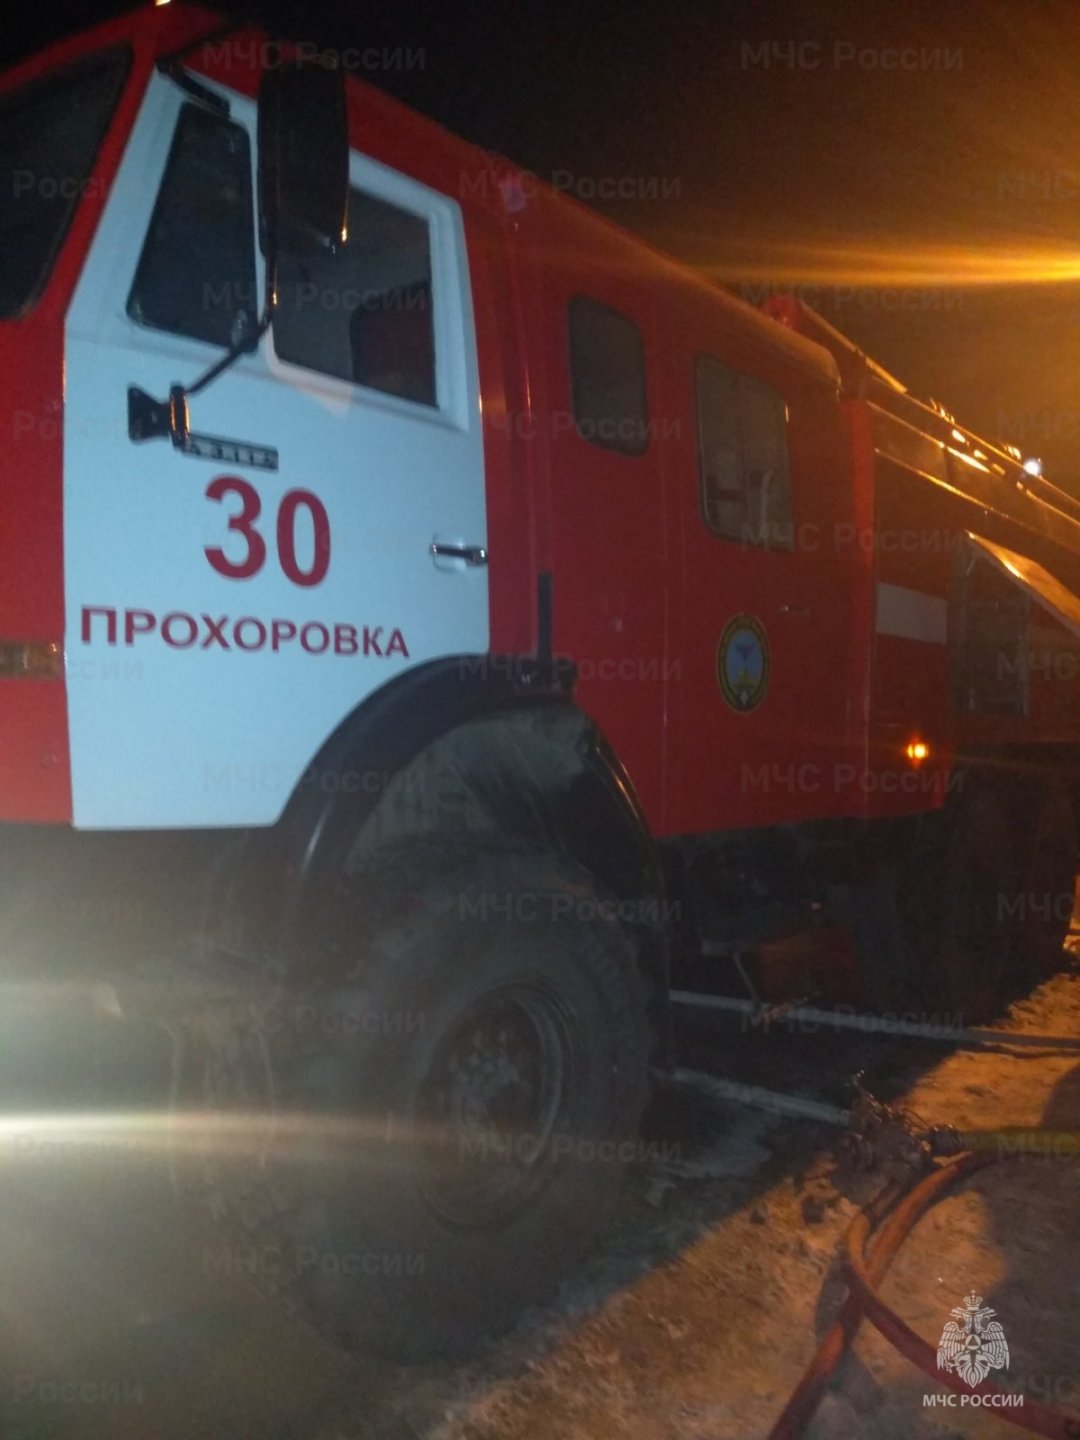 Спасатели МЧС России приняли участие в ликвидации ДТП в поселке Прохоровка Прохоровского района